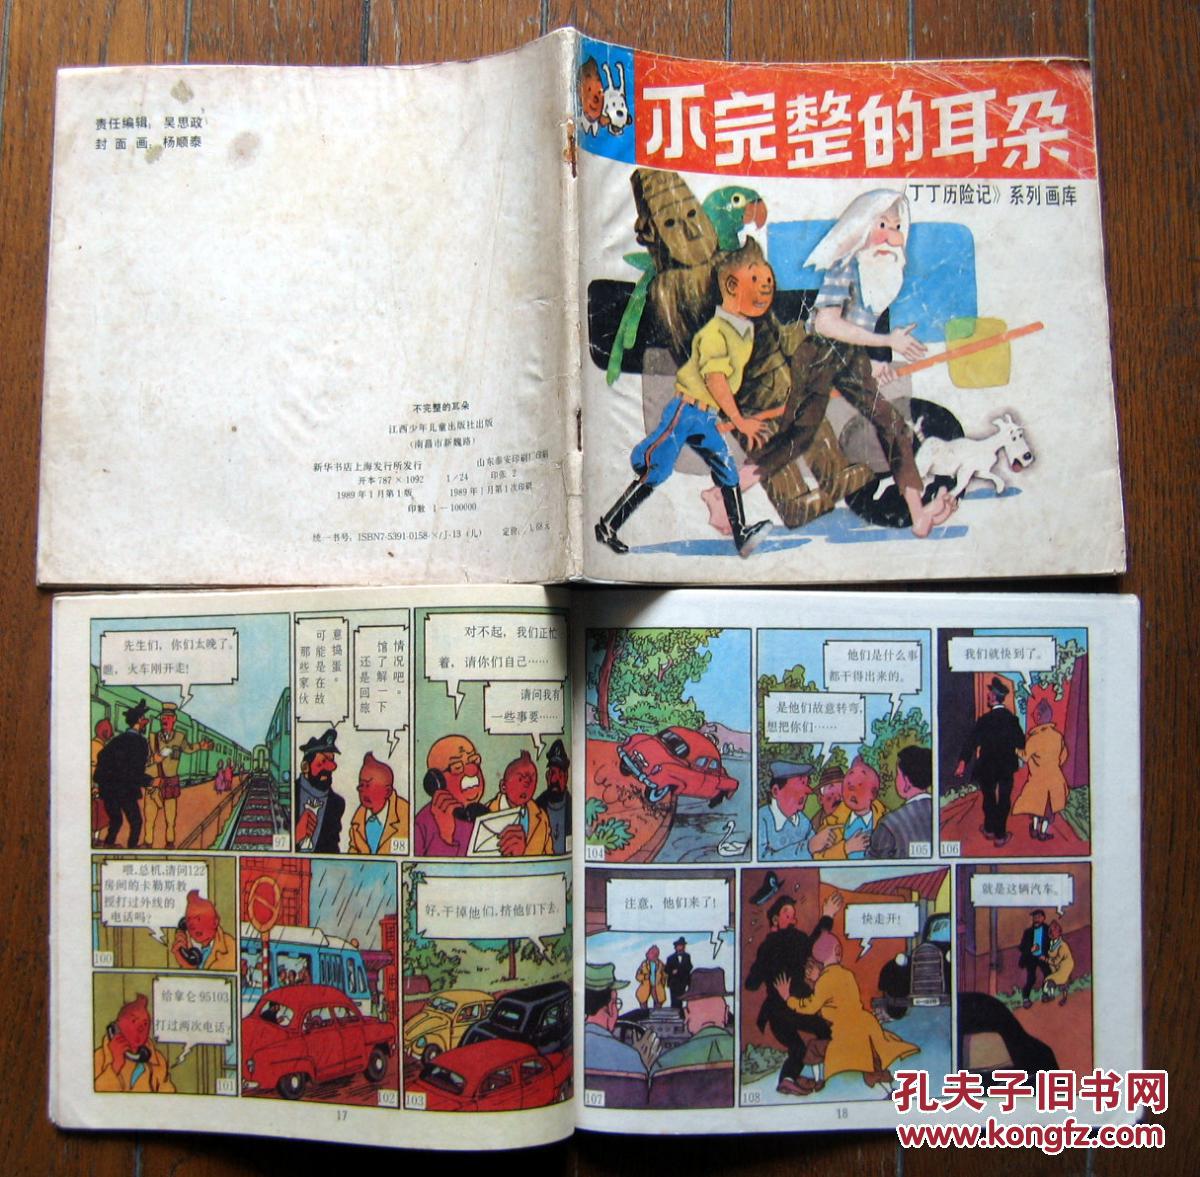 《丁丁历险记》系列画库 《可怕的武器》1989年江西少年儿童出版社 彩色24开本连环画